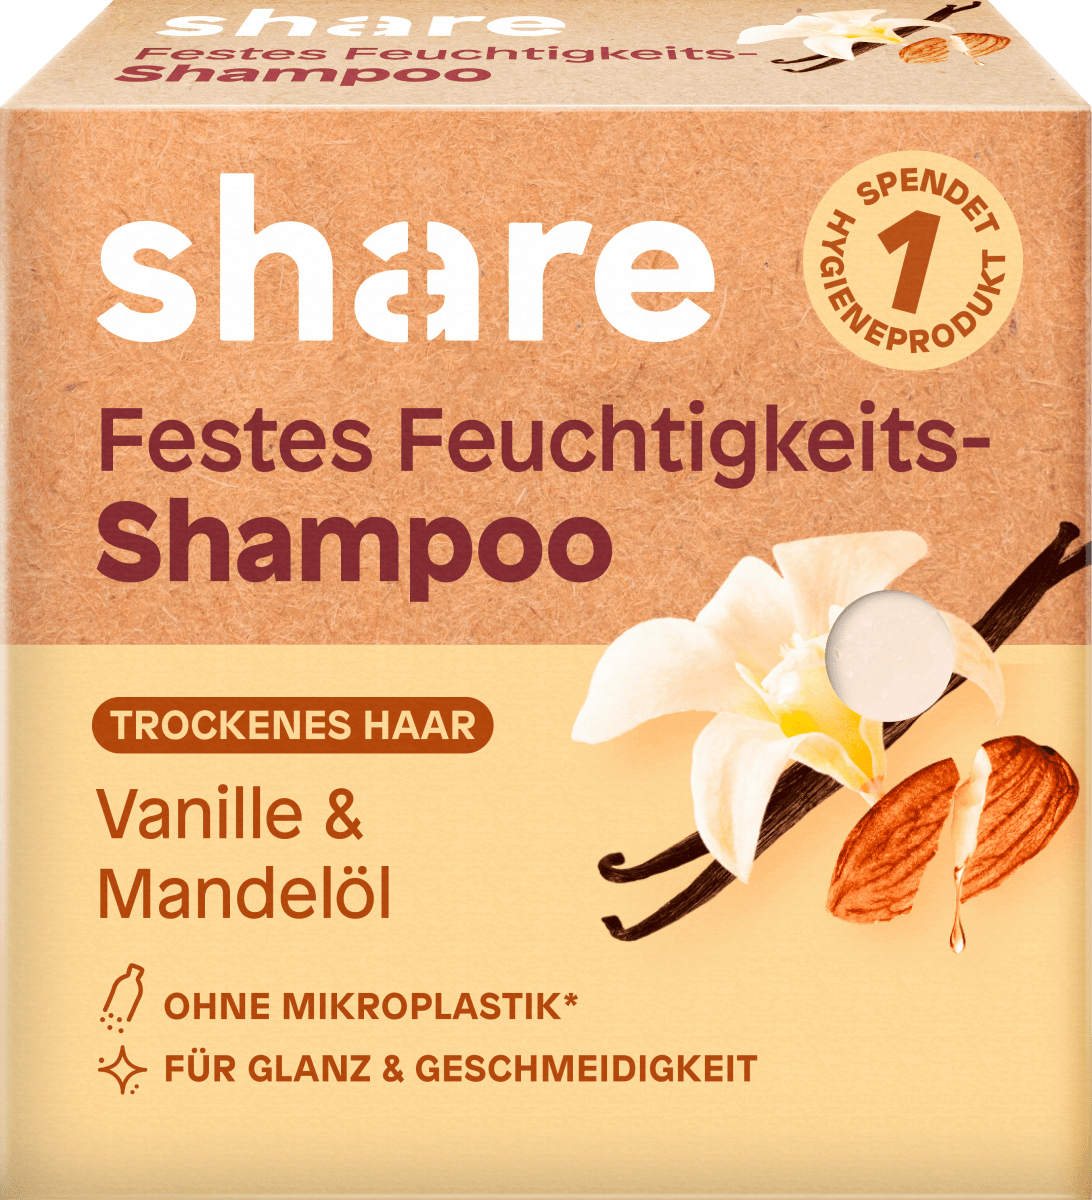 g Shampoo günstig Vanille dauerhaft kaufen online share Mandelöl, Festes & 60